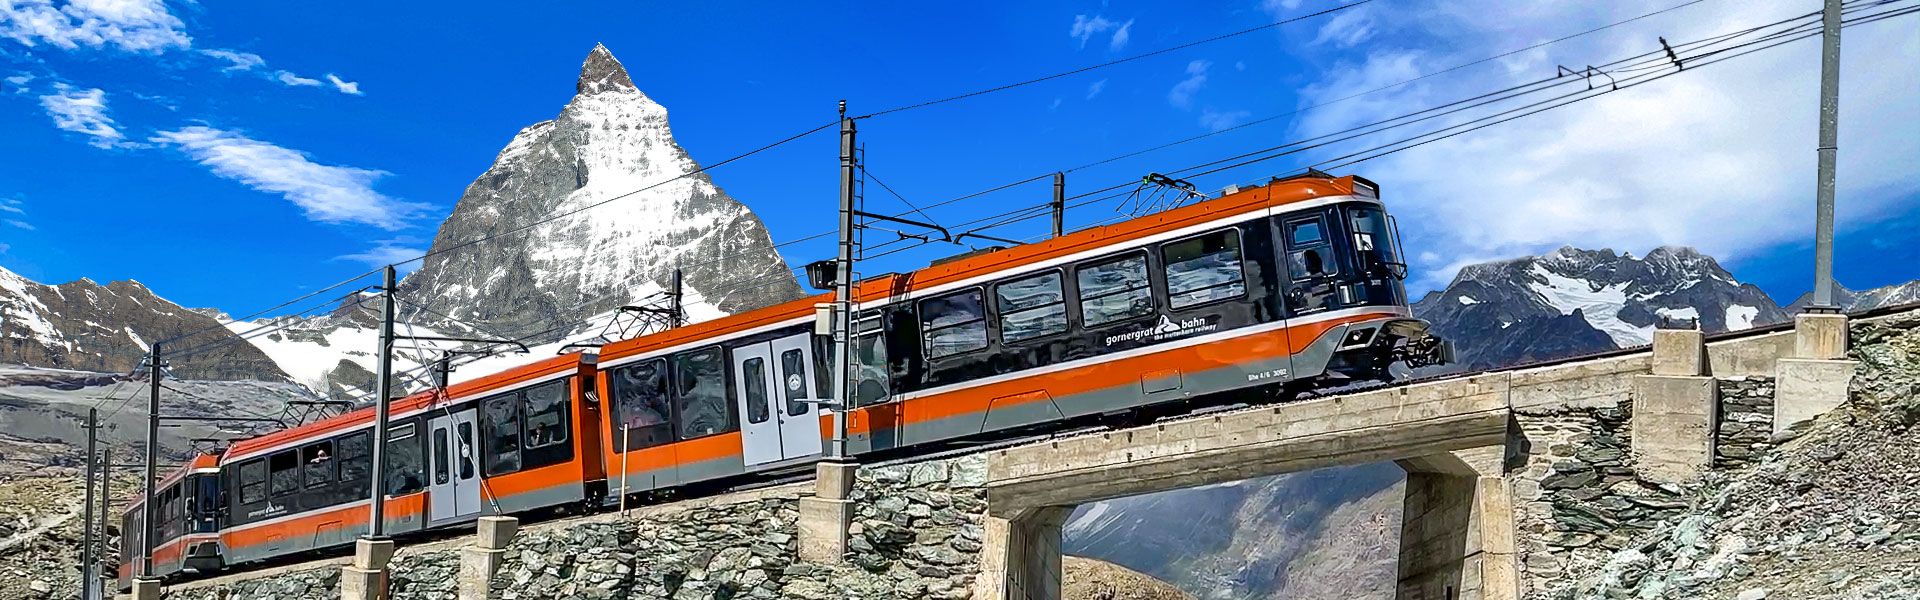 Matterhorn Cogwheel Train